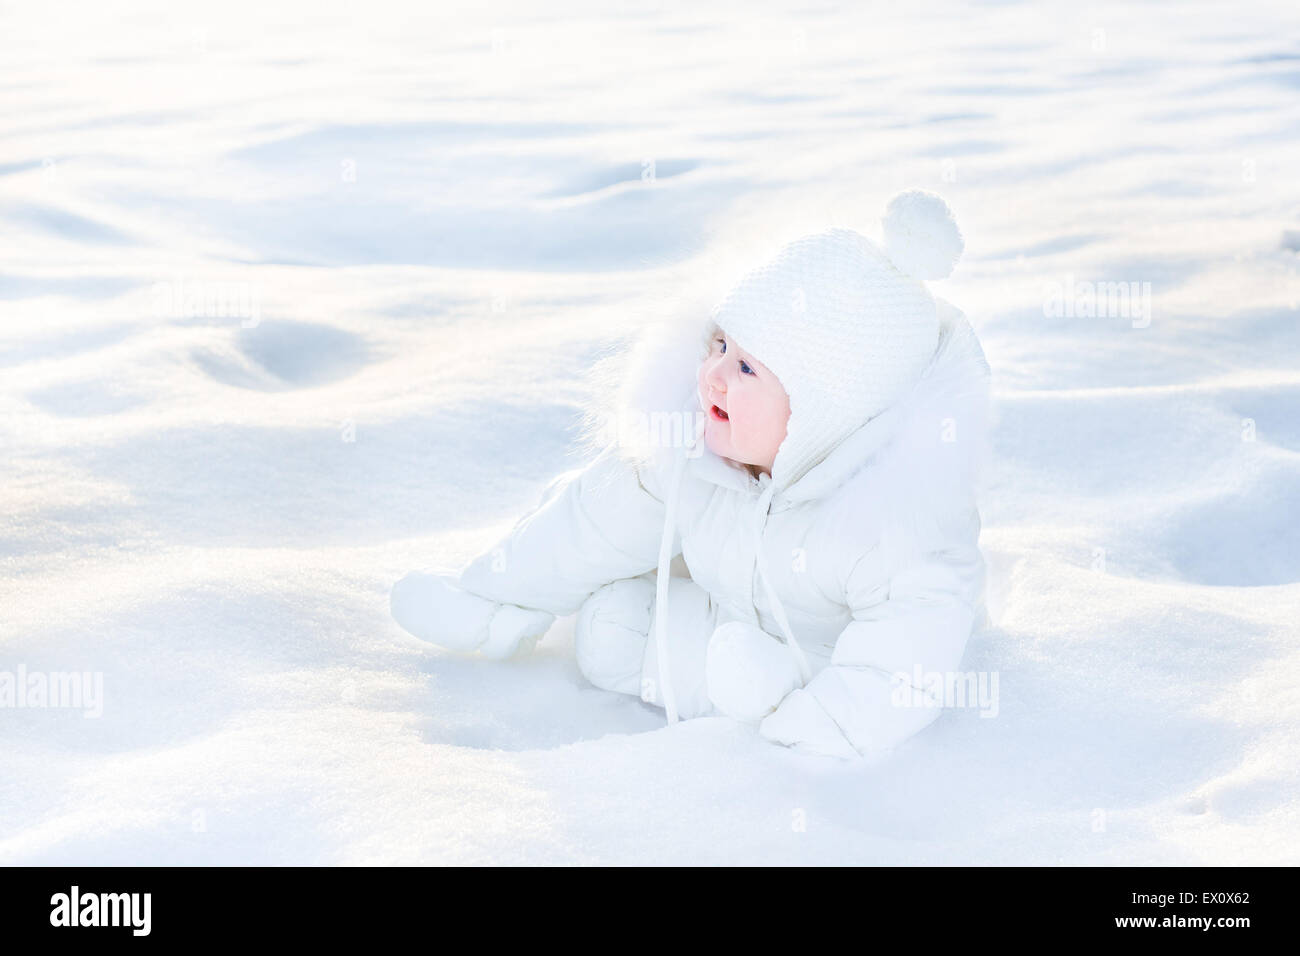 Poco lindo bebé en una chaqueta blanca jugando en la nieve Foto de stock